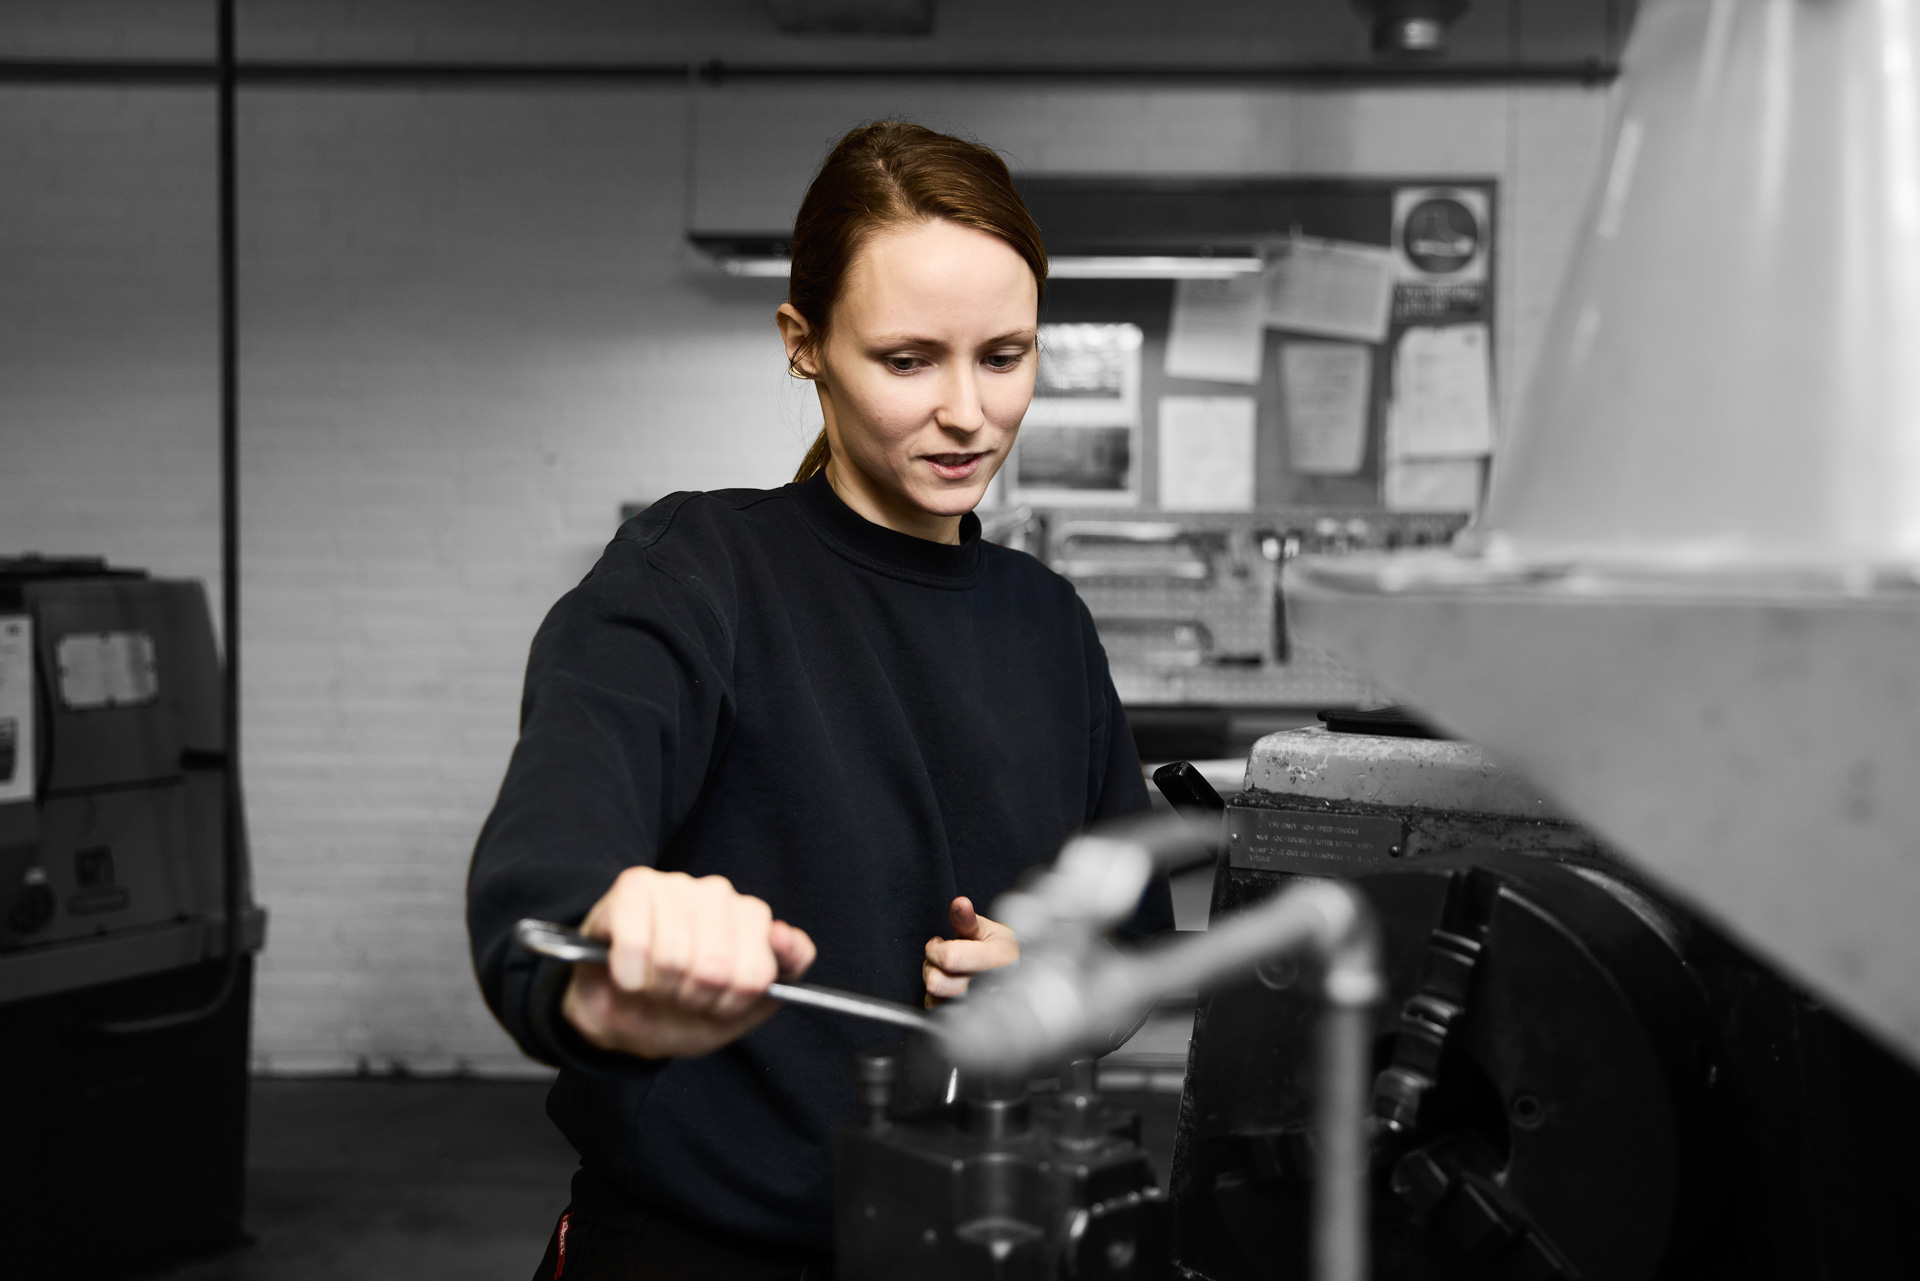 ZBC industriuddannelser i Ringsted - industriassistentelev arbejder på maskiner i værksted